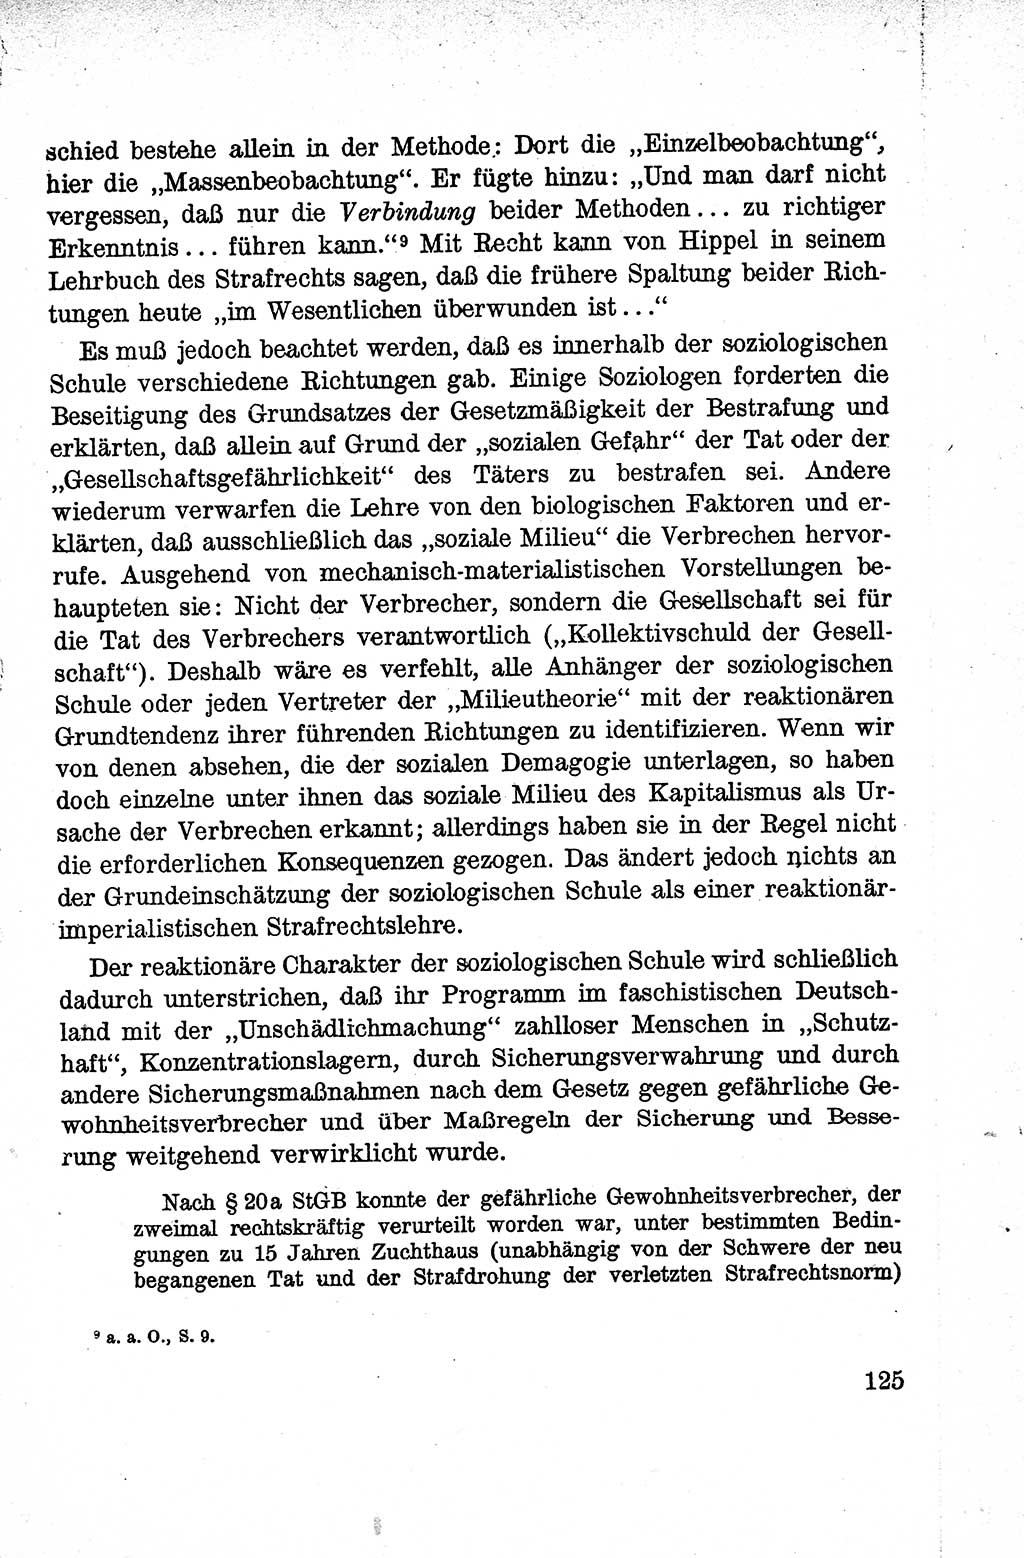 Lehrbuch des Strafrechts der Deutschen Demokratischen Republik (DDR), Allgemeiner Teil 1959, Seite 125 (Lb. Strafr. DDR AT 1959, S. 125)